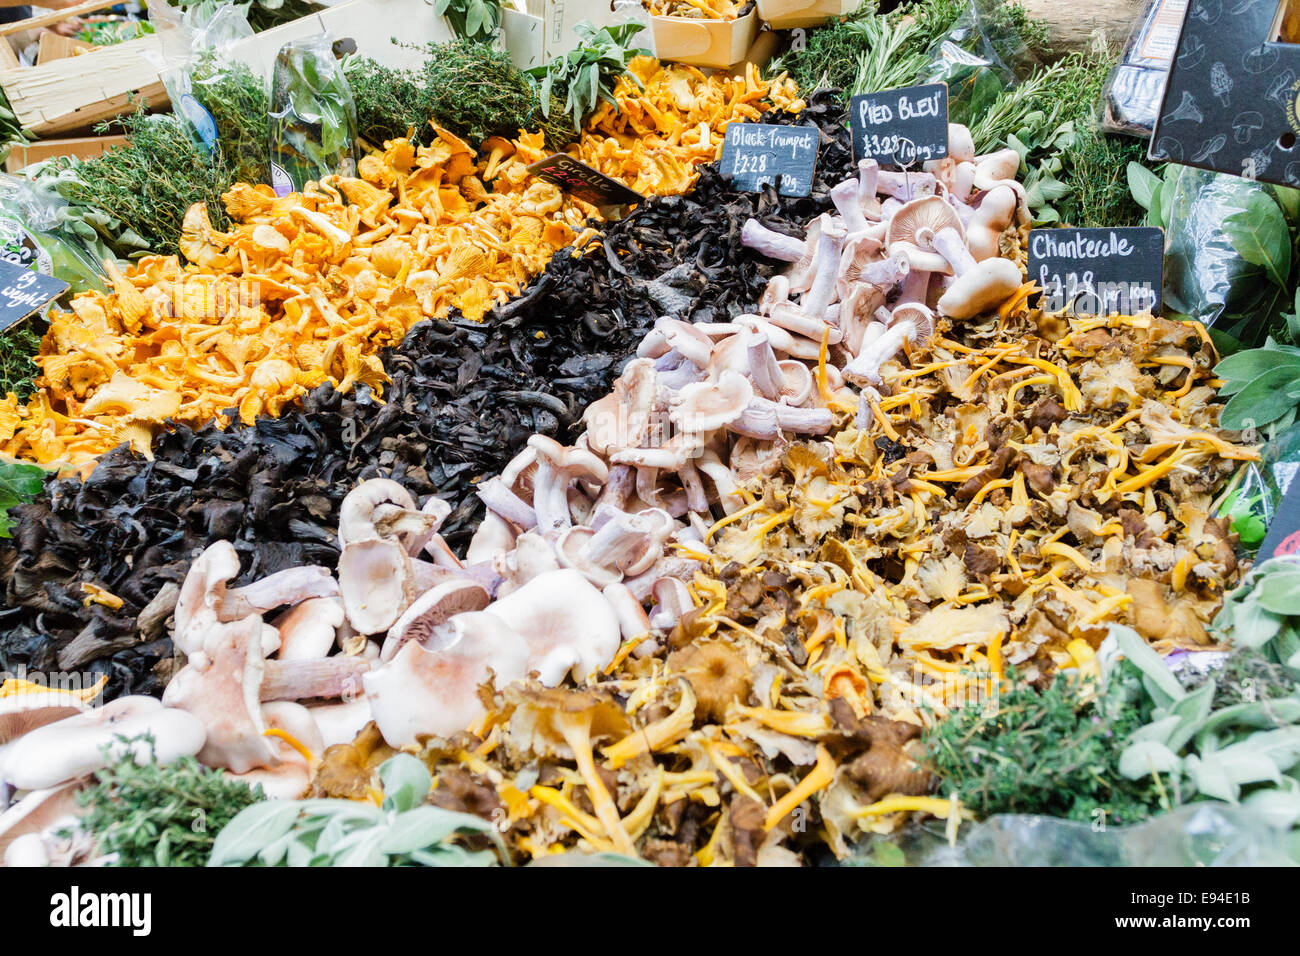 La selezione di diversi funghi e fungo su un mercato in stallo, Borough Market, London, England, Regno Unito Foto Stock